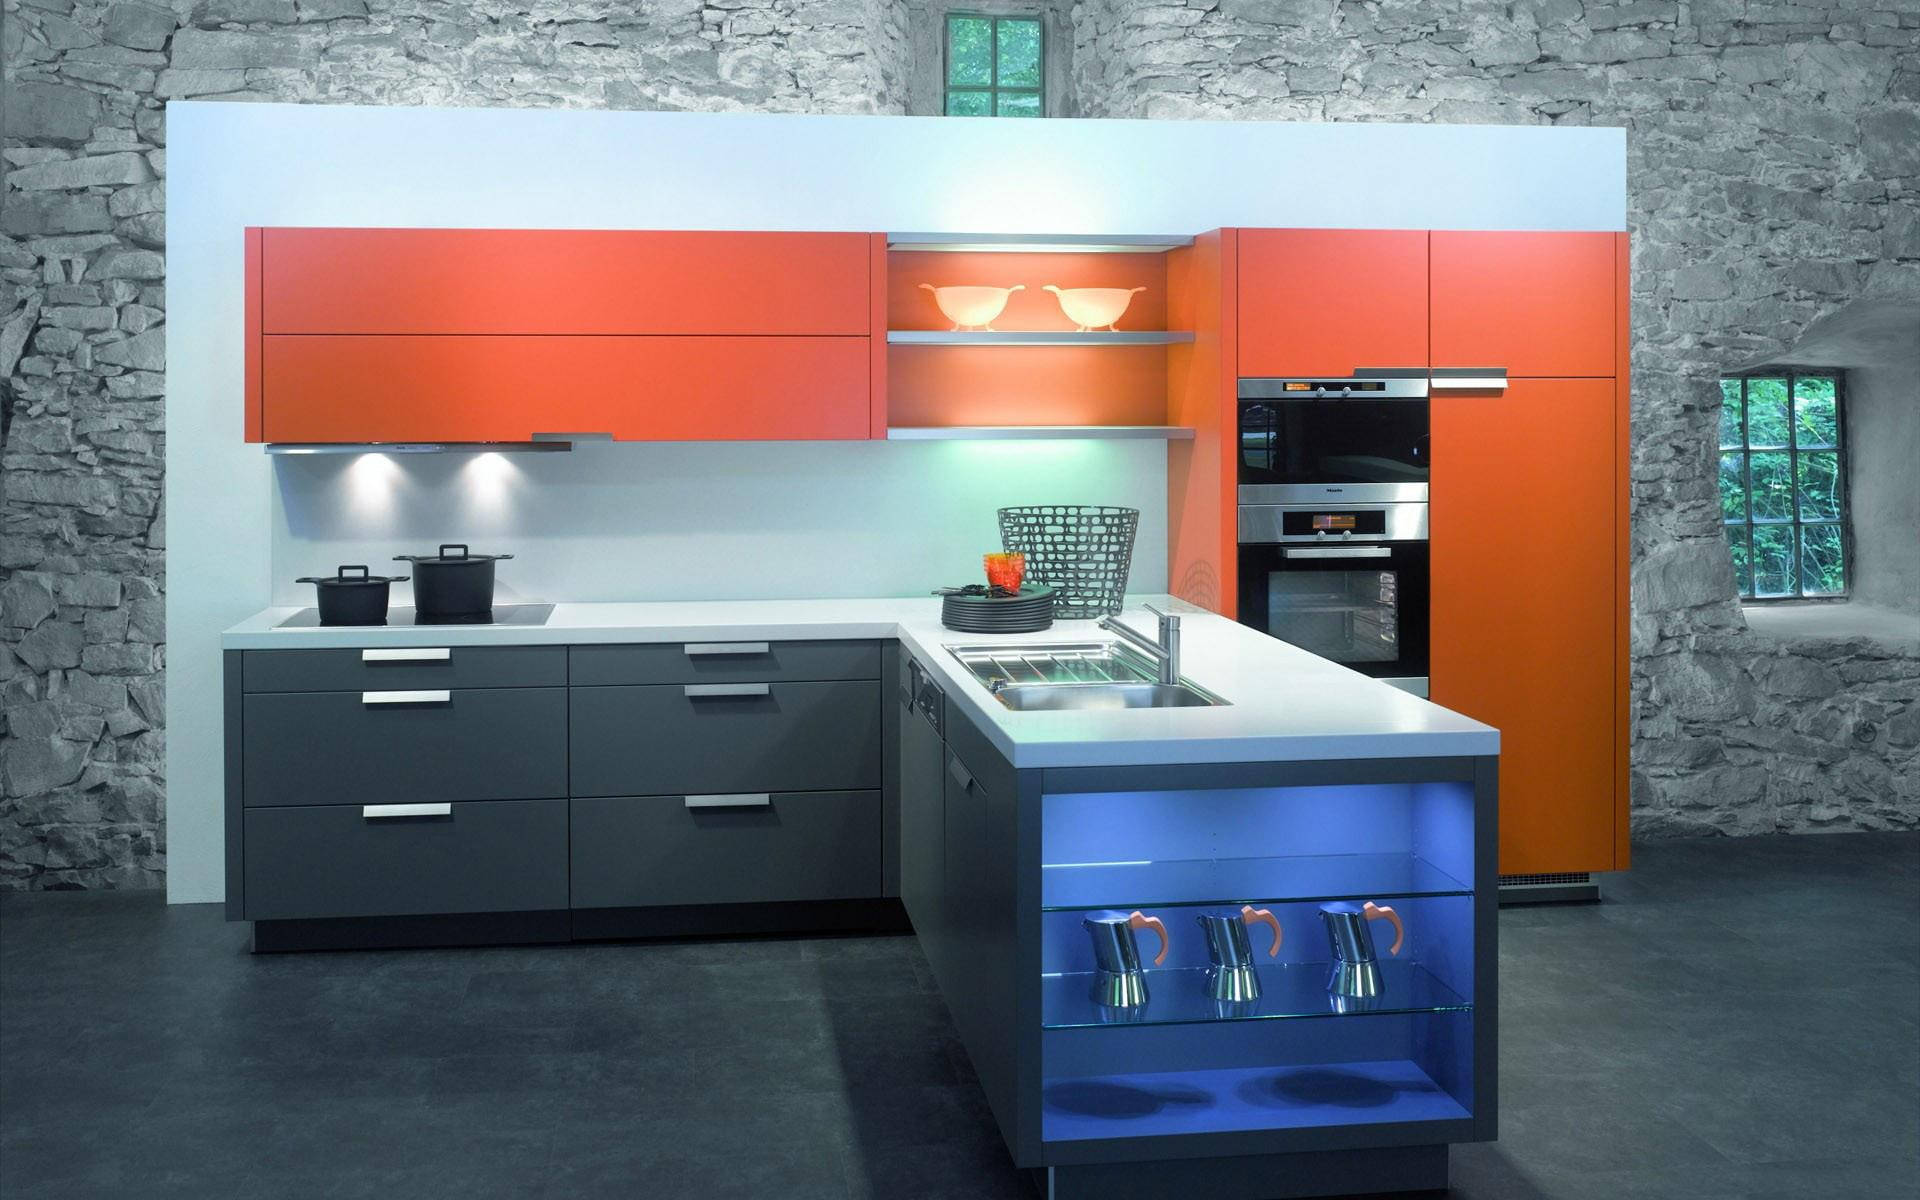 Kitchen Design With Orange Accents Wallpaper